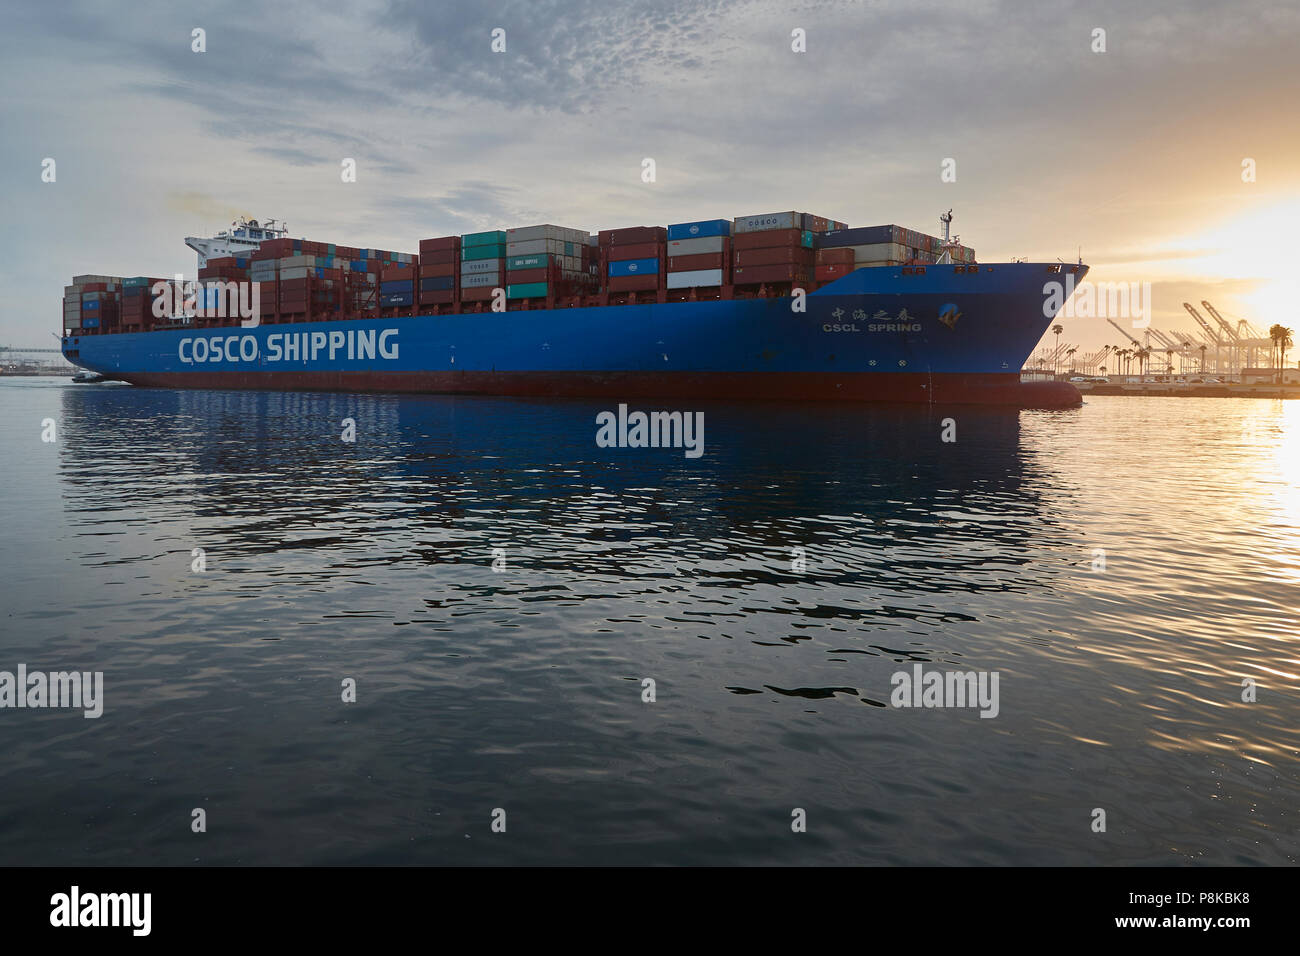 La Giant COSCO SHIPPING Container Ship, CSCL SPRING Con Partenza dal Porto di Los Angeles, California, USA, All'alba. Foto Stock